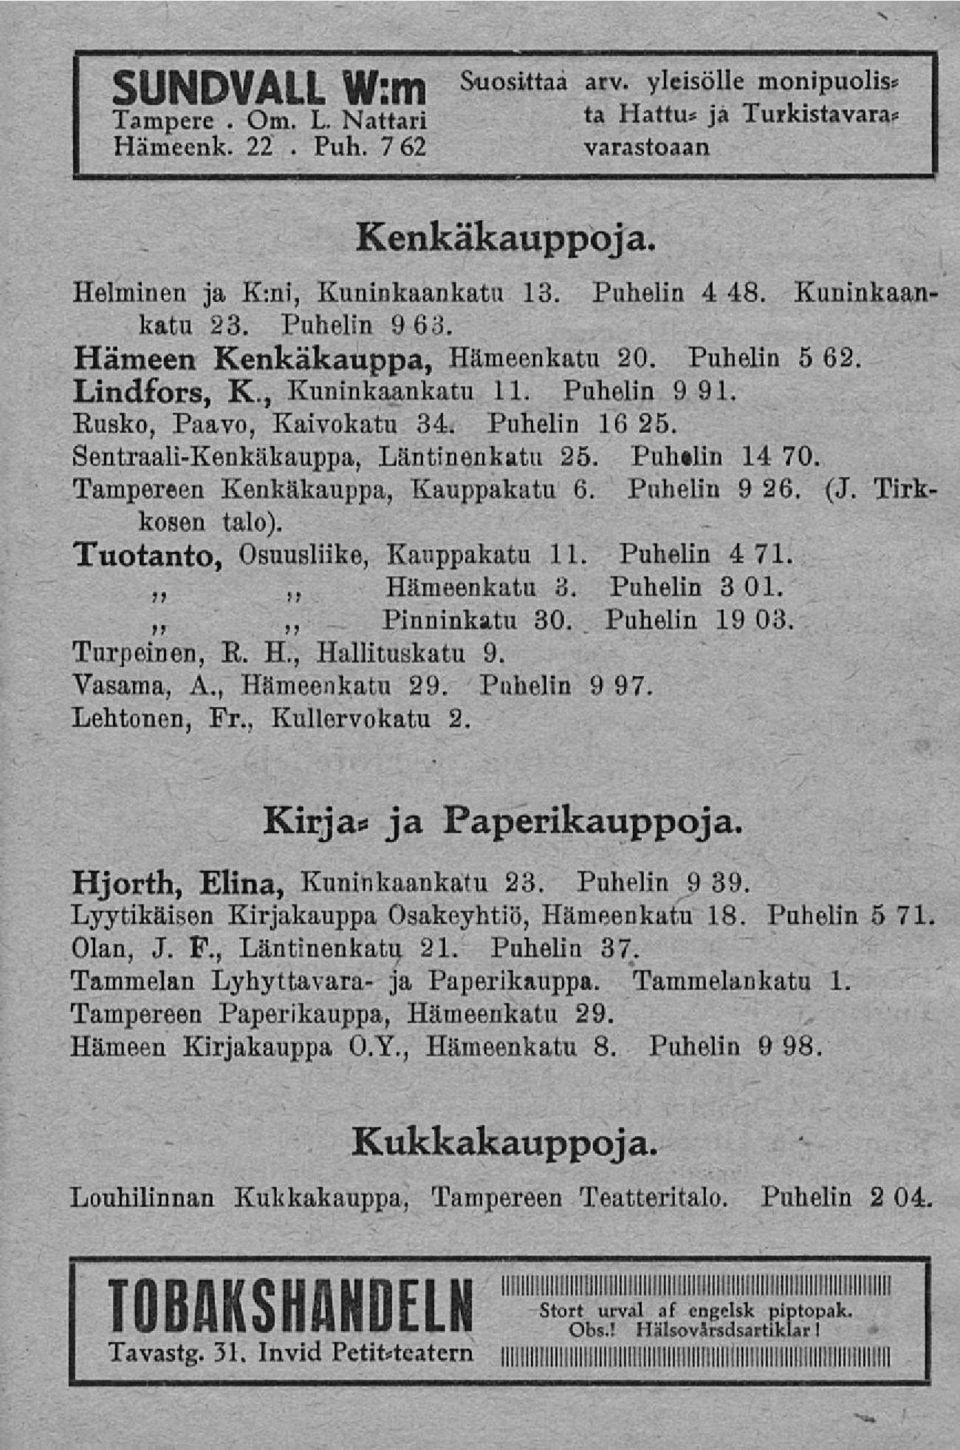 Sentraali-Kenkäkauppa, Läntinenkatu 25. Pulnlin 14 70. Tampereen Kenkäkauppa, Kauppakatu 6. Puhelin 9 26. (J. Tirkkosen talo). Tuotanto, Osuusliike, Kauppakatu 11. Puhelin 4 71. Hämeenkatu 3.